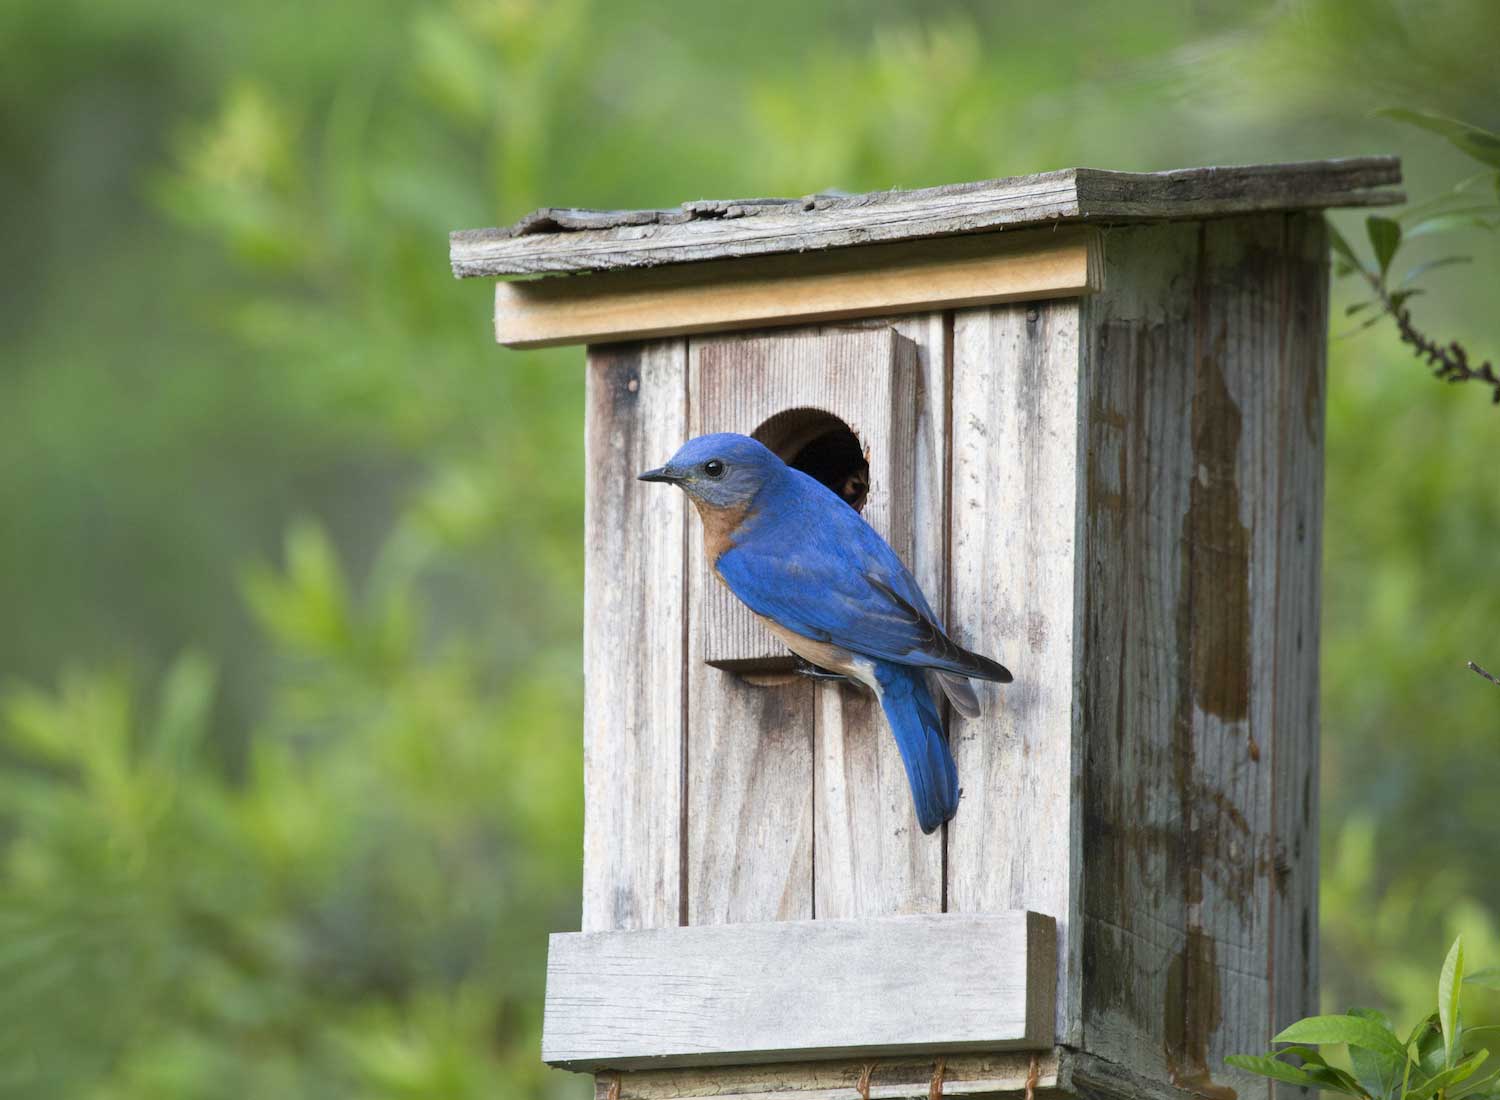 An eastern bluebird on a bluebird box.